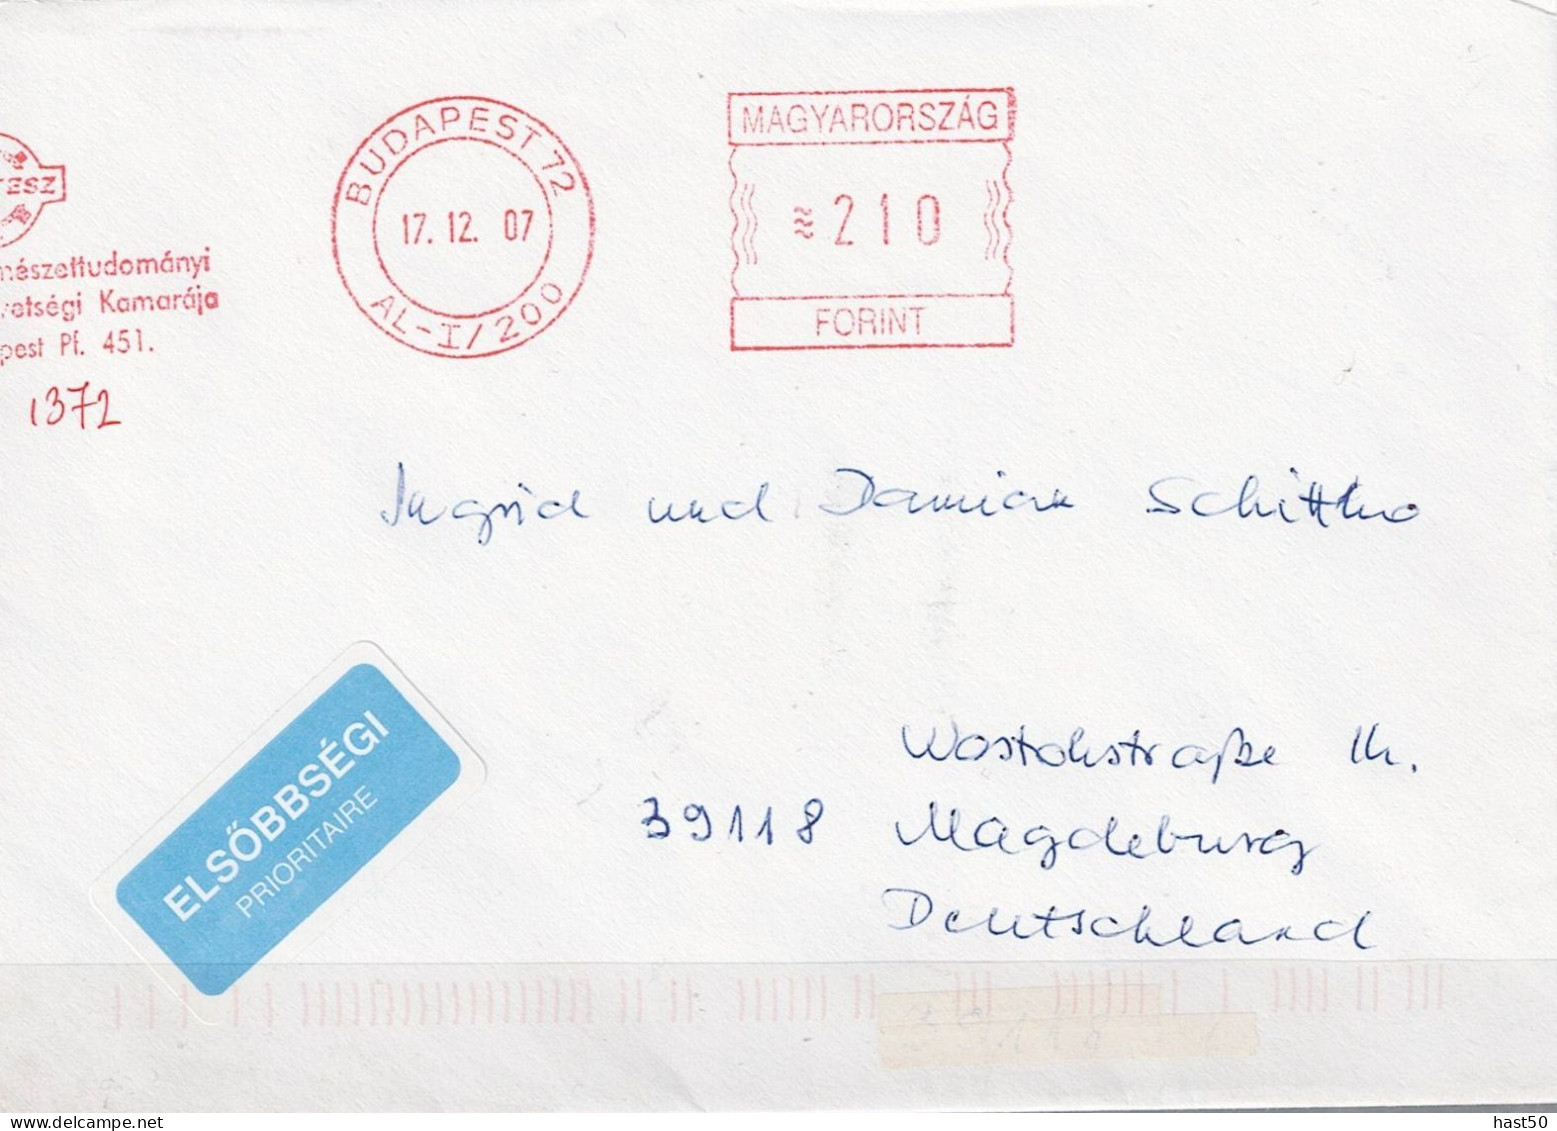 Ungarn Hungary Hongrie - Brief Mit Maschinenwerbestempel MTESZ Budapest Vom 17.12.07 Nach Magdeburg - Marcofilie